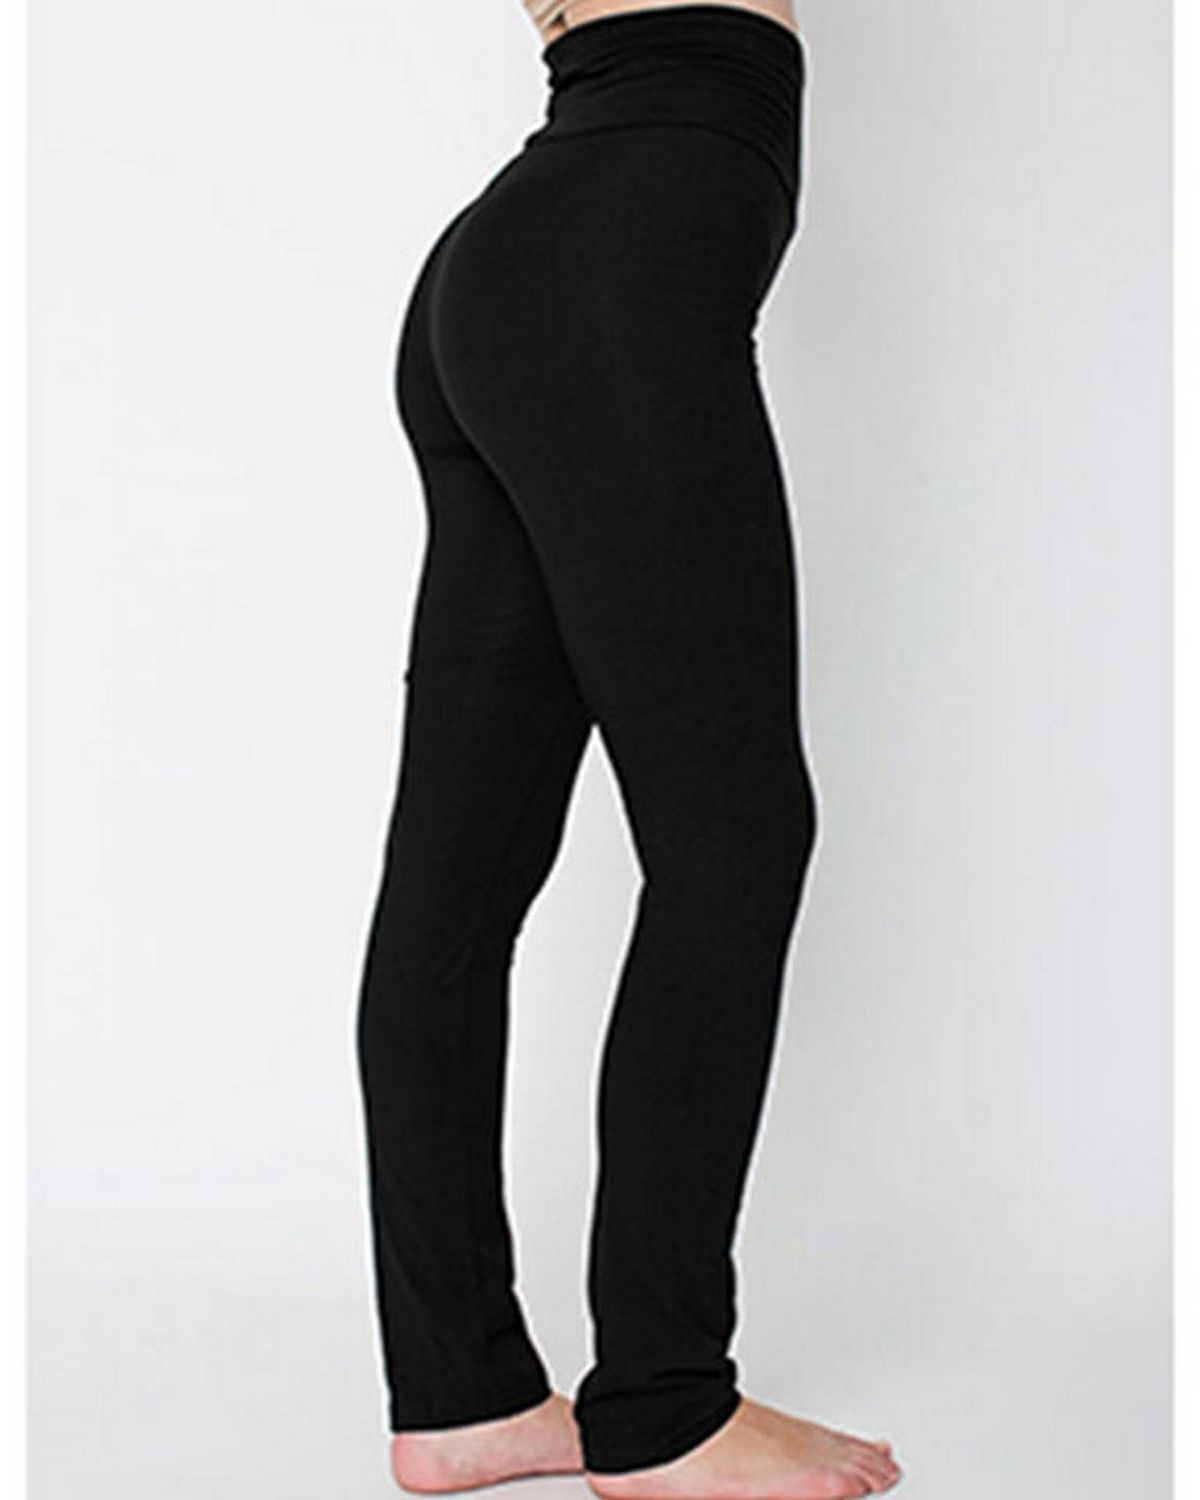 American Apparel 8375W Women's Cotton/Spandex Yoga Pant